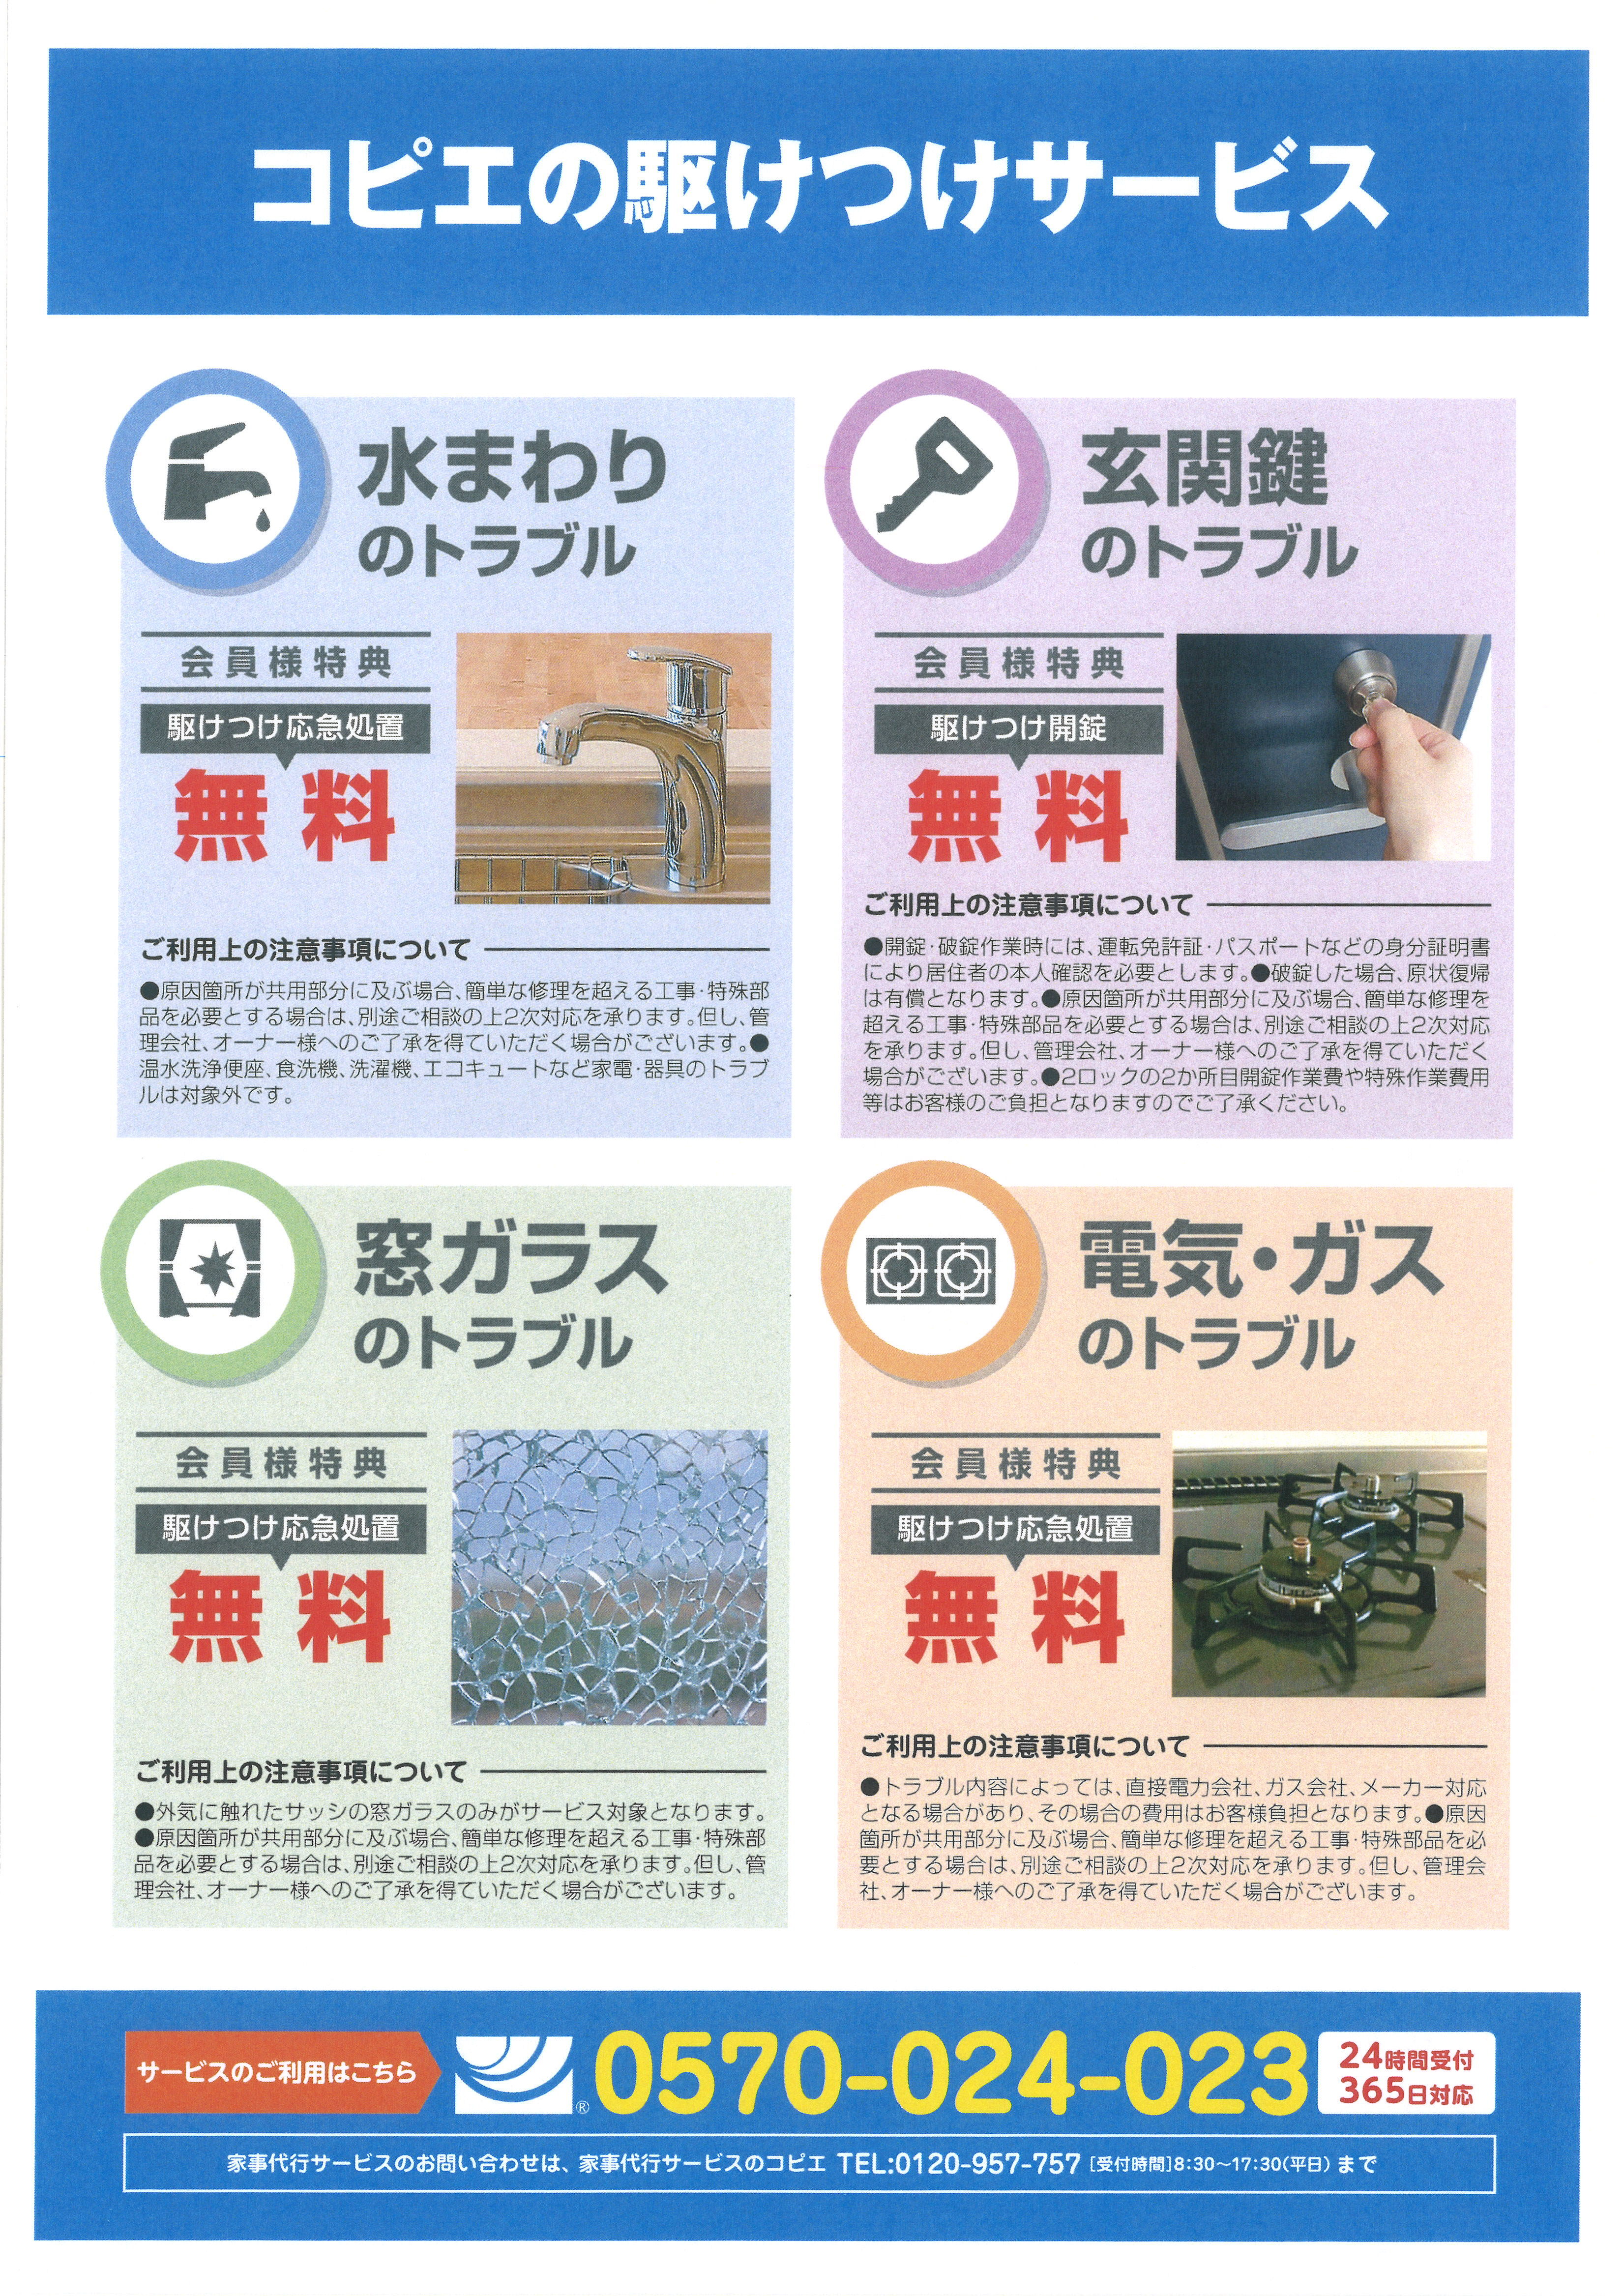 横浜セイビが コピエの駆けつけサービス を2月より提供開始 急なトラブルに備えた家事代行サービス 株式会社横浜セイビのプレスリリース